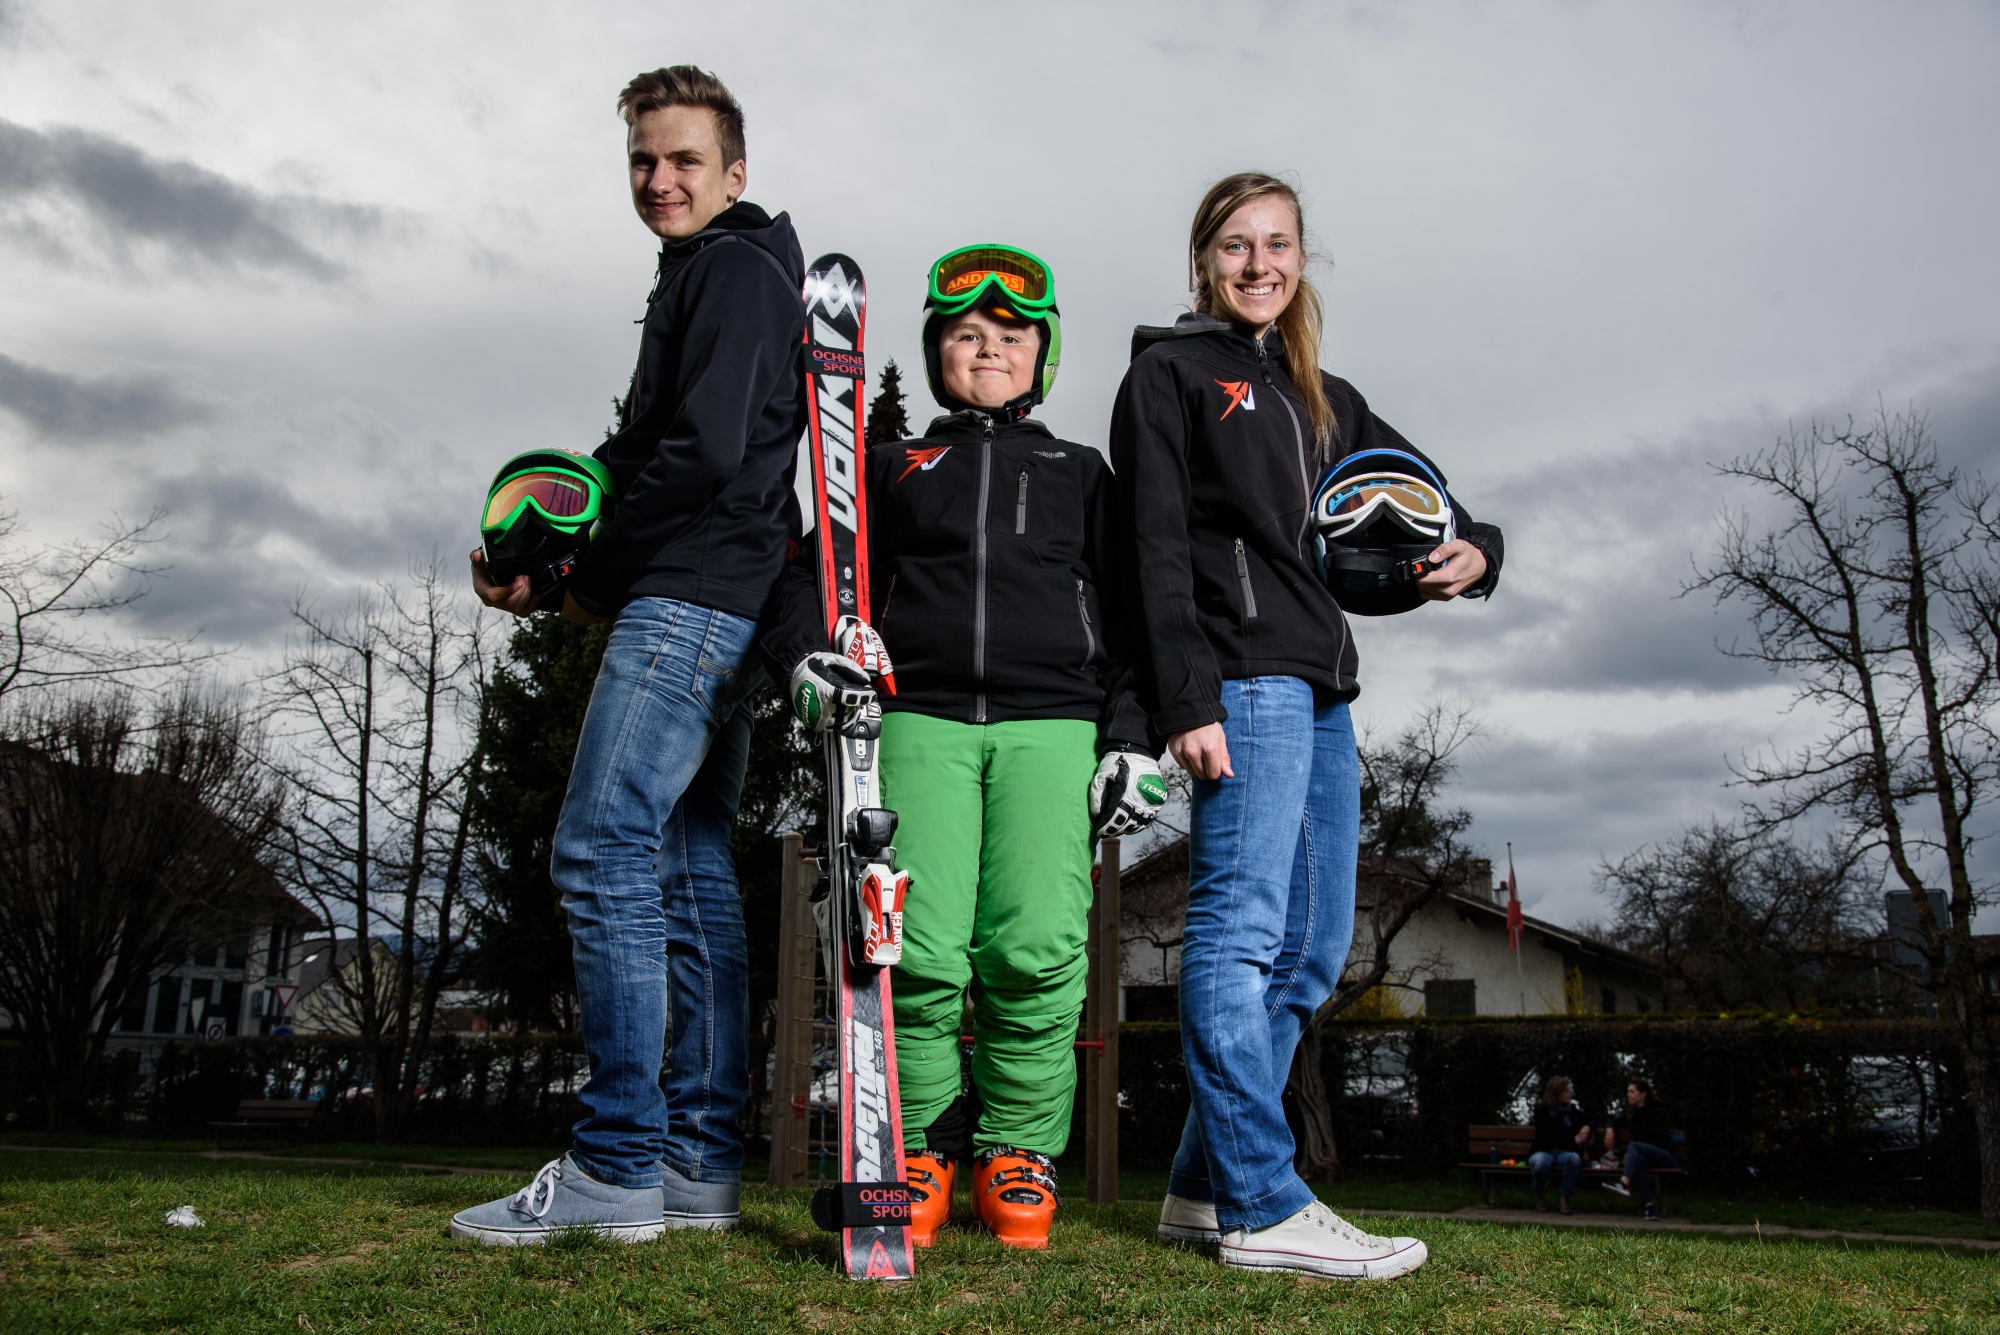 Gland, mardi 21 mars 2017, photos de la fraterie Violon qui pratique la compétition de ski en famille, de gauche à droite : Jules, Karl et Anna Violon, photos Cédric Sandoz